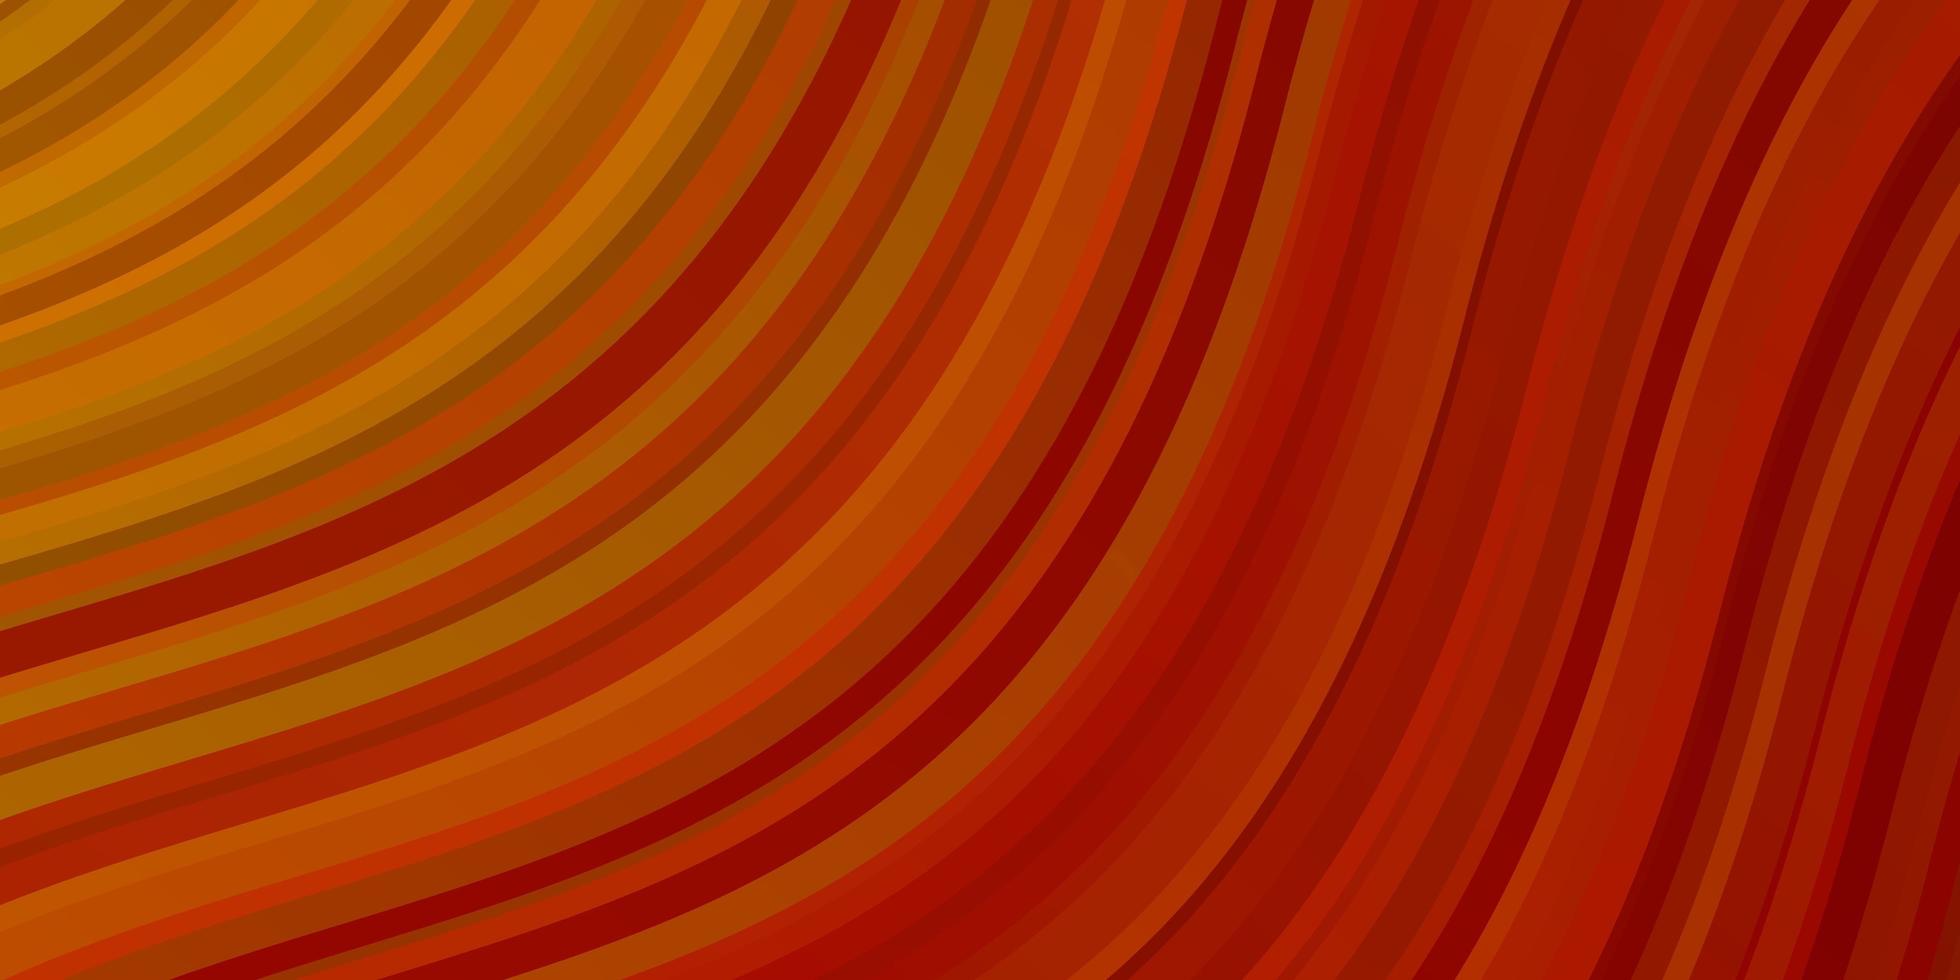 fundo laranja claro do vetor com arcos. amostra brilhante com linhas curvas coloridas, formas. modelo para o seu design de interface do usuário.